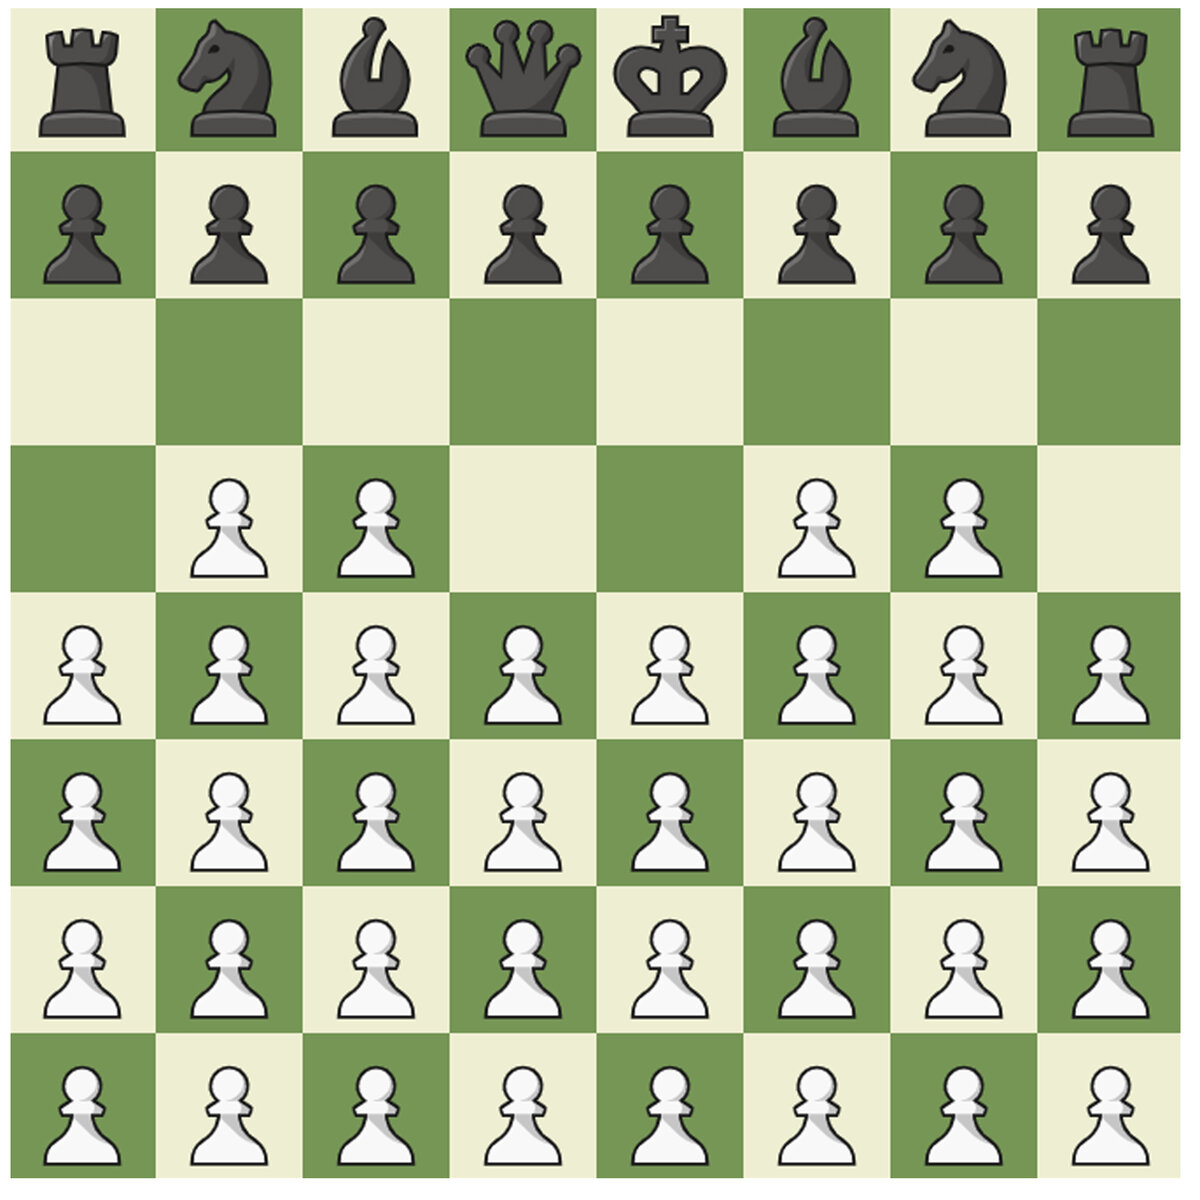 https://www.chess.com/variants